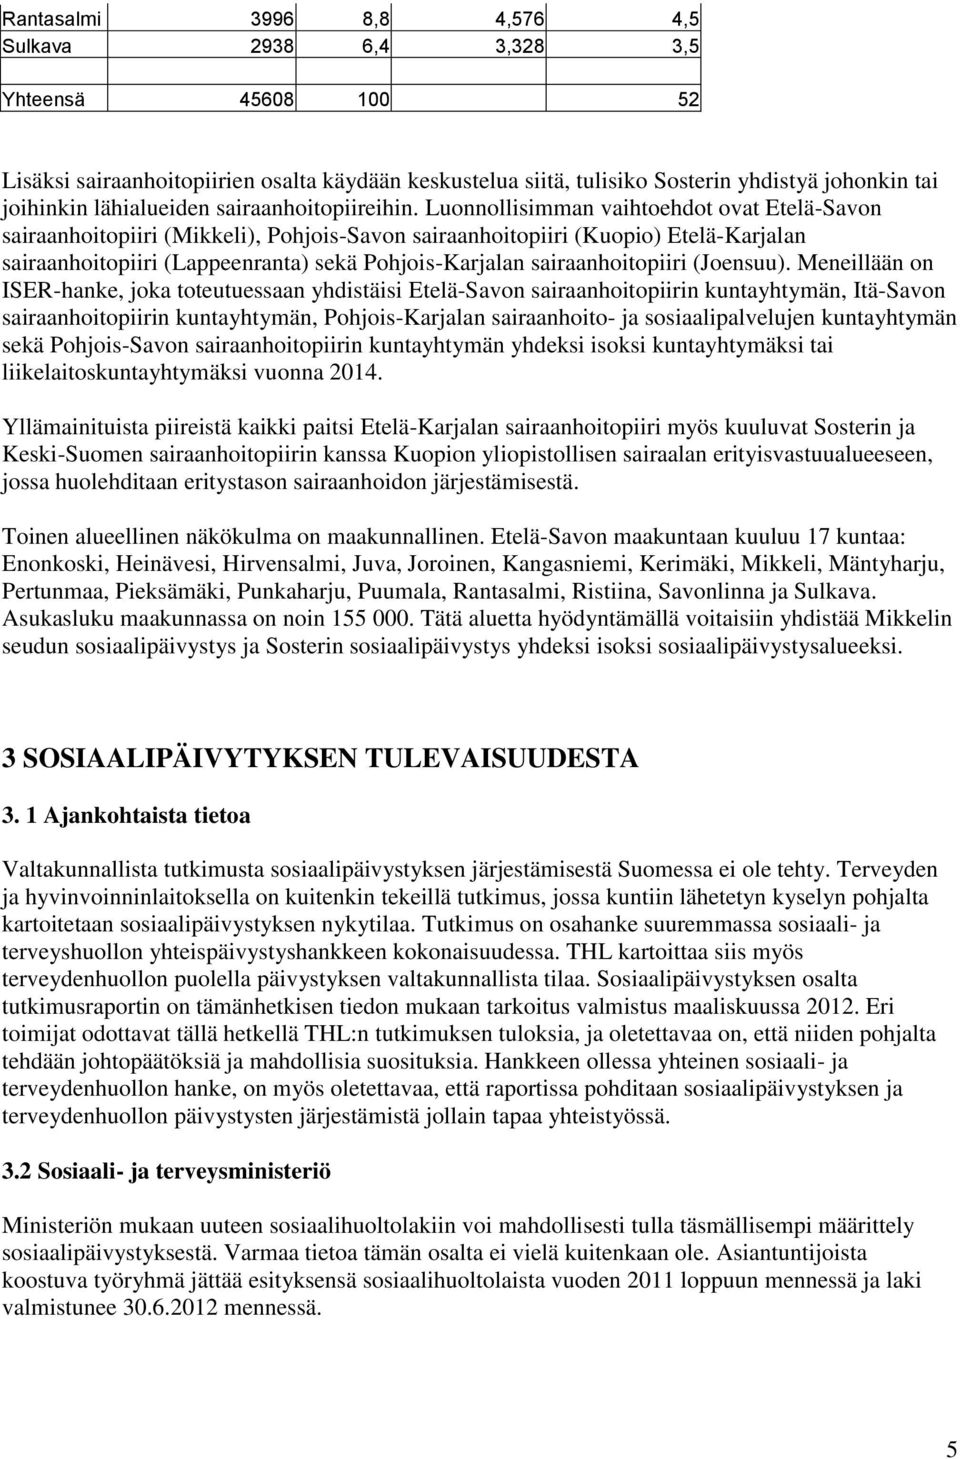 Luonnollisimman vaihtoehdot ovat Etelä-Savon sairaanhoitopiiri (Mikkeli), Pohjois-Savon sairaanhoitopiiri (Kuopio) Etelä-Karjalan sairaanhoitopiiri (Lappeenranta) sekä Pohjois-Karjalan